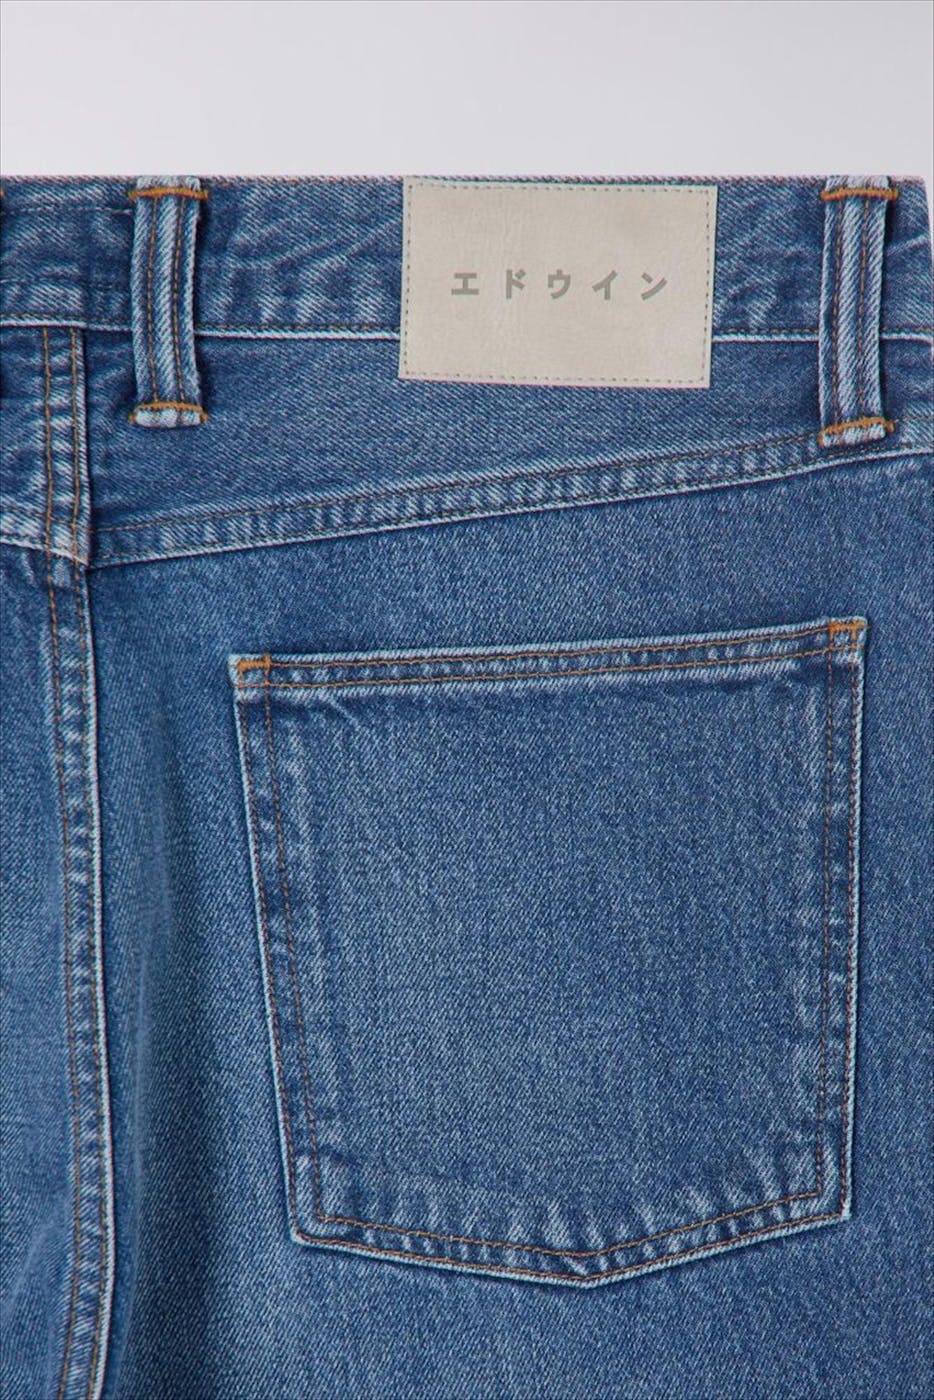 Edwin - Blauwe Tyrell jeans